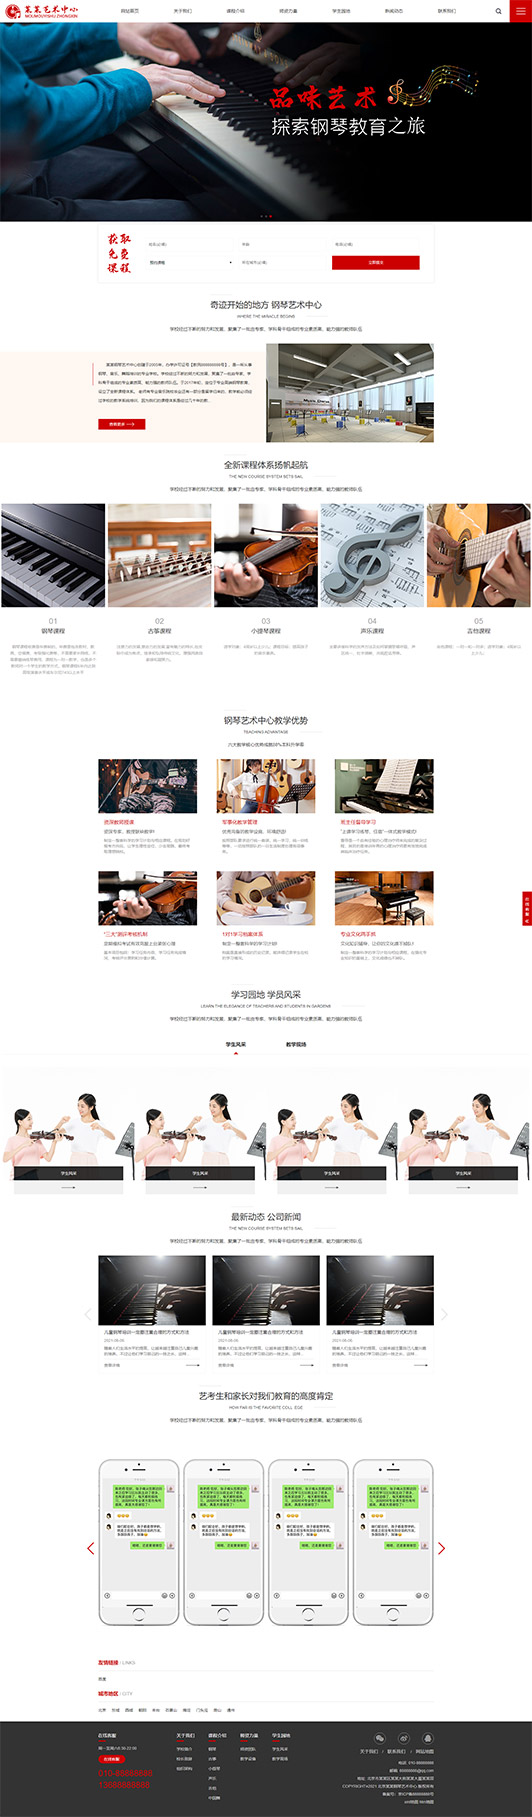 珠海钢琴艺术培训公司响应式企业网站